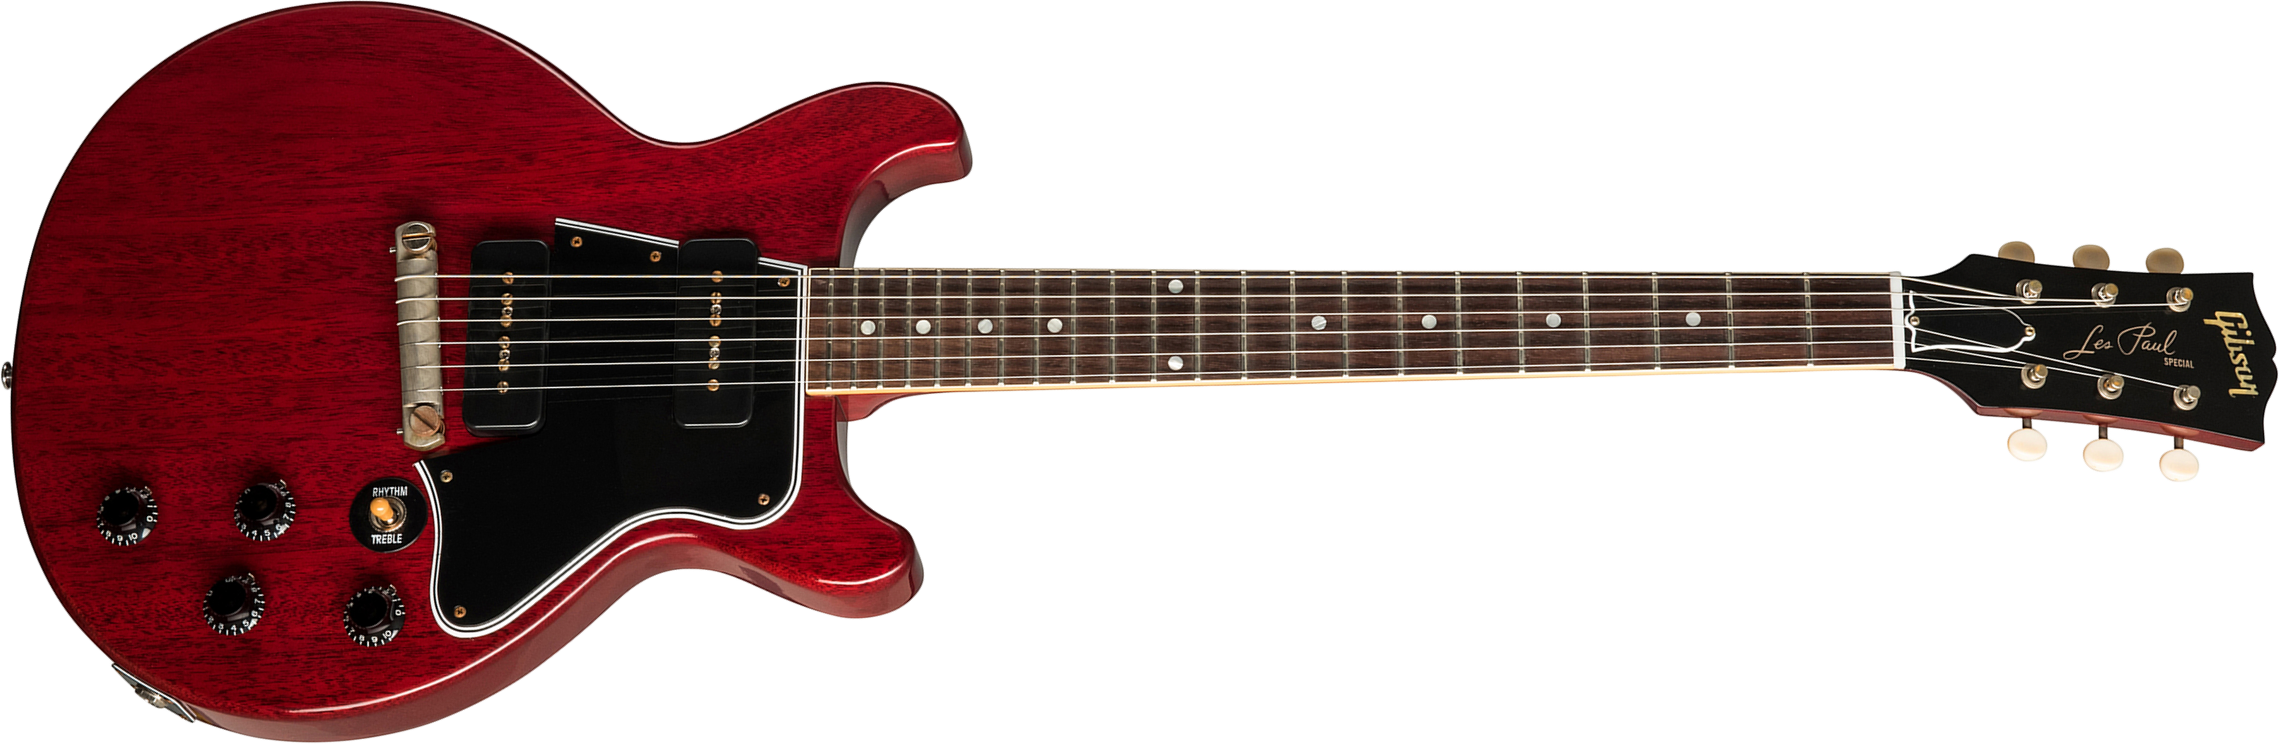 Gibson Custom Shop Les Paul Special 1960 Double Cut Reissue 2p90 Ht Rw - Vos Cherry Red - Guitarra eléctrica de corte único. - Main picture